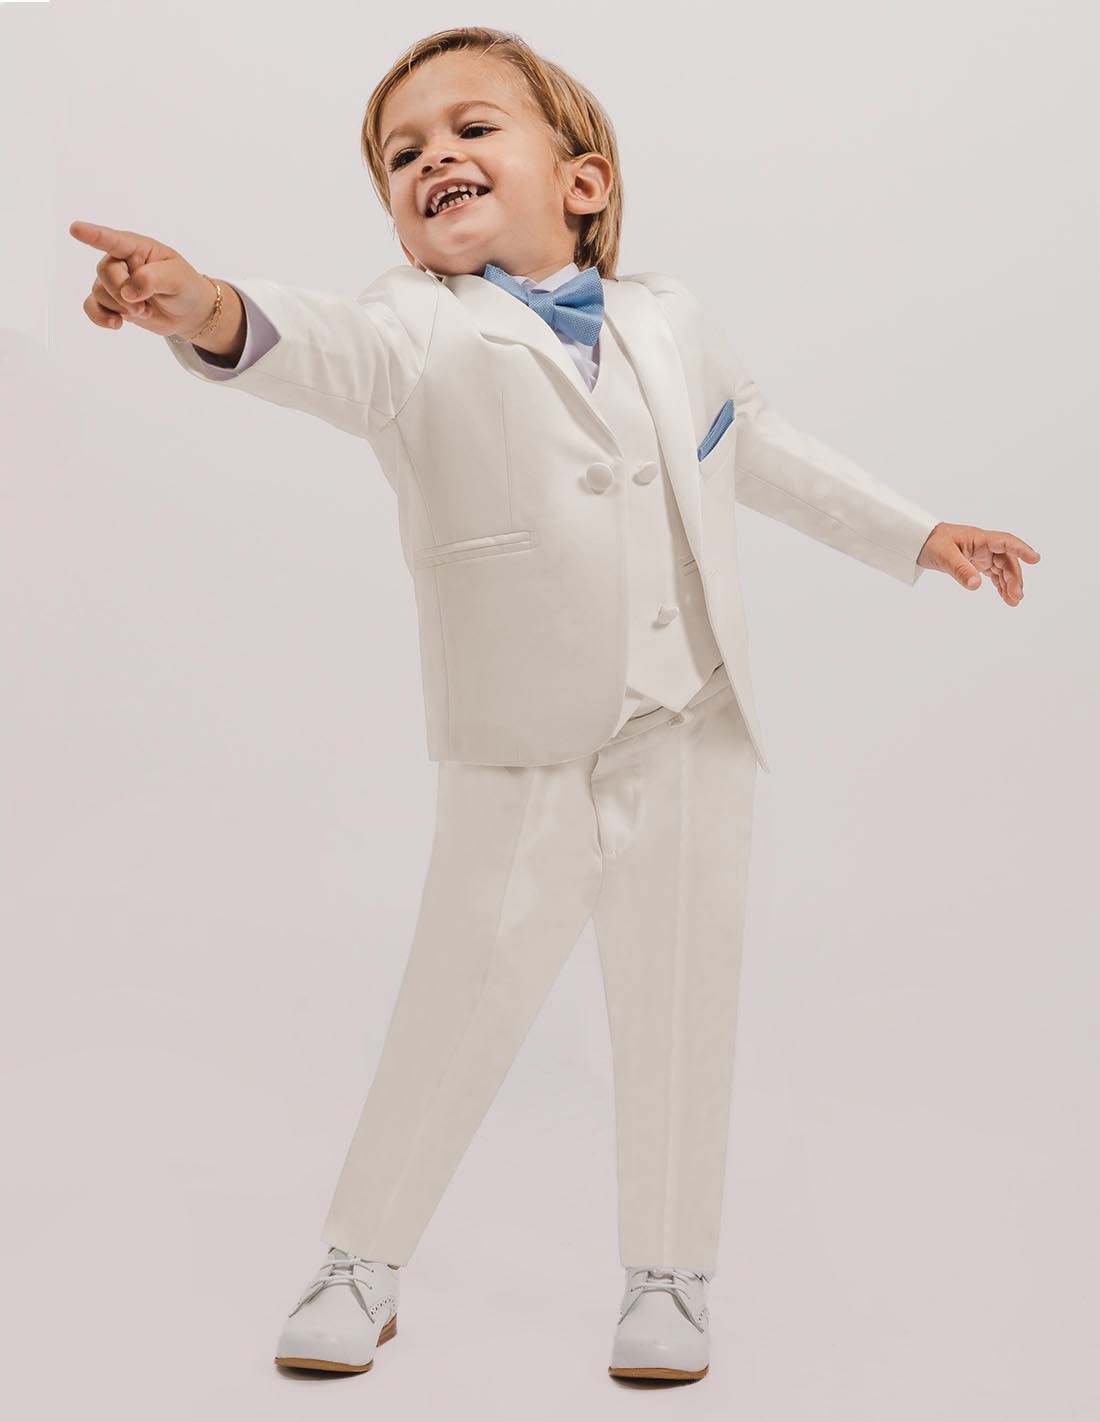 Costume blanc pour bébé ou petit garçon parfait pour baptême ou cérémonie